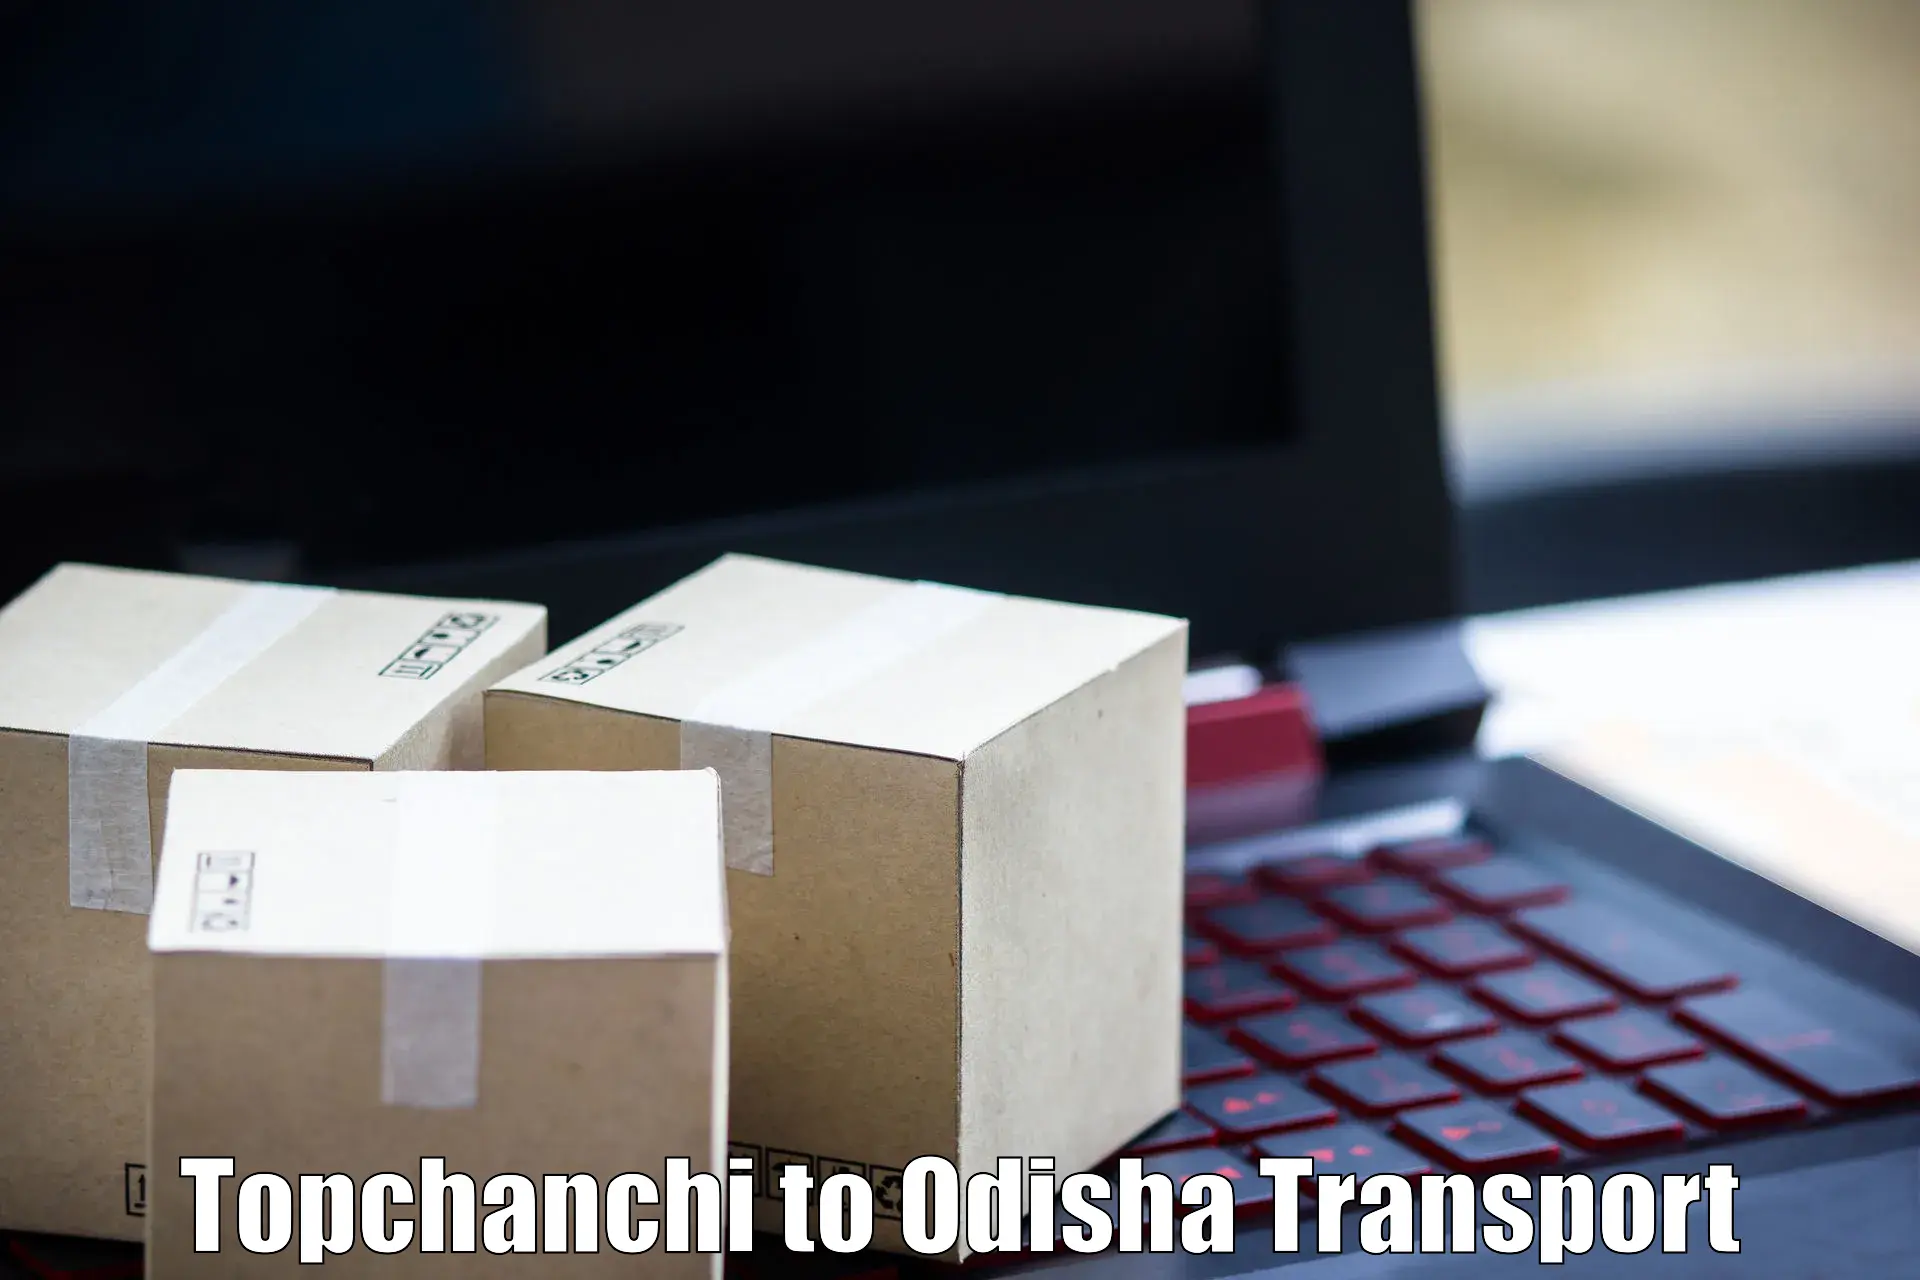 Transport in sharing Topchanchi to Kishorenagar